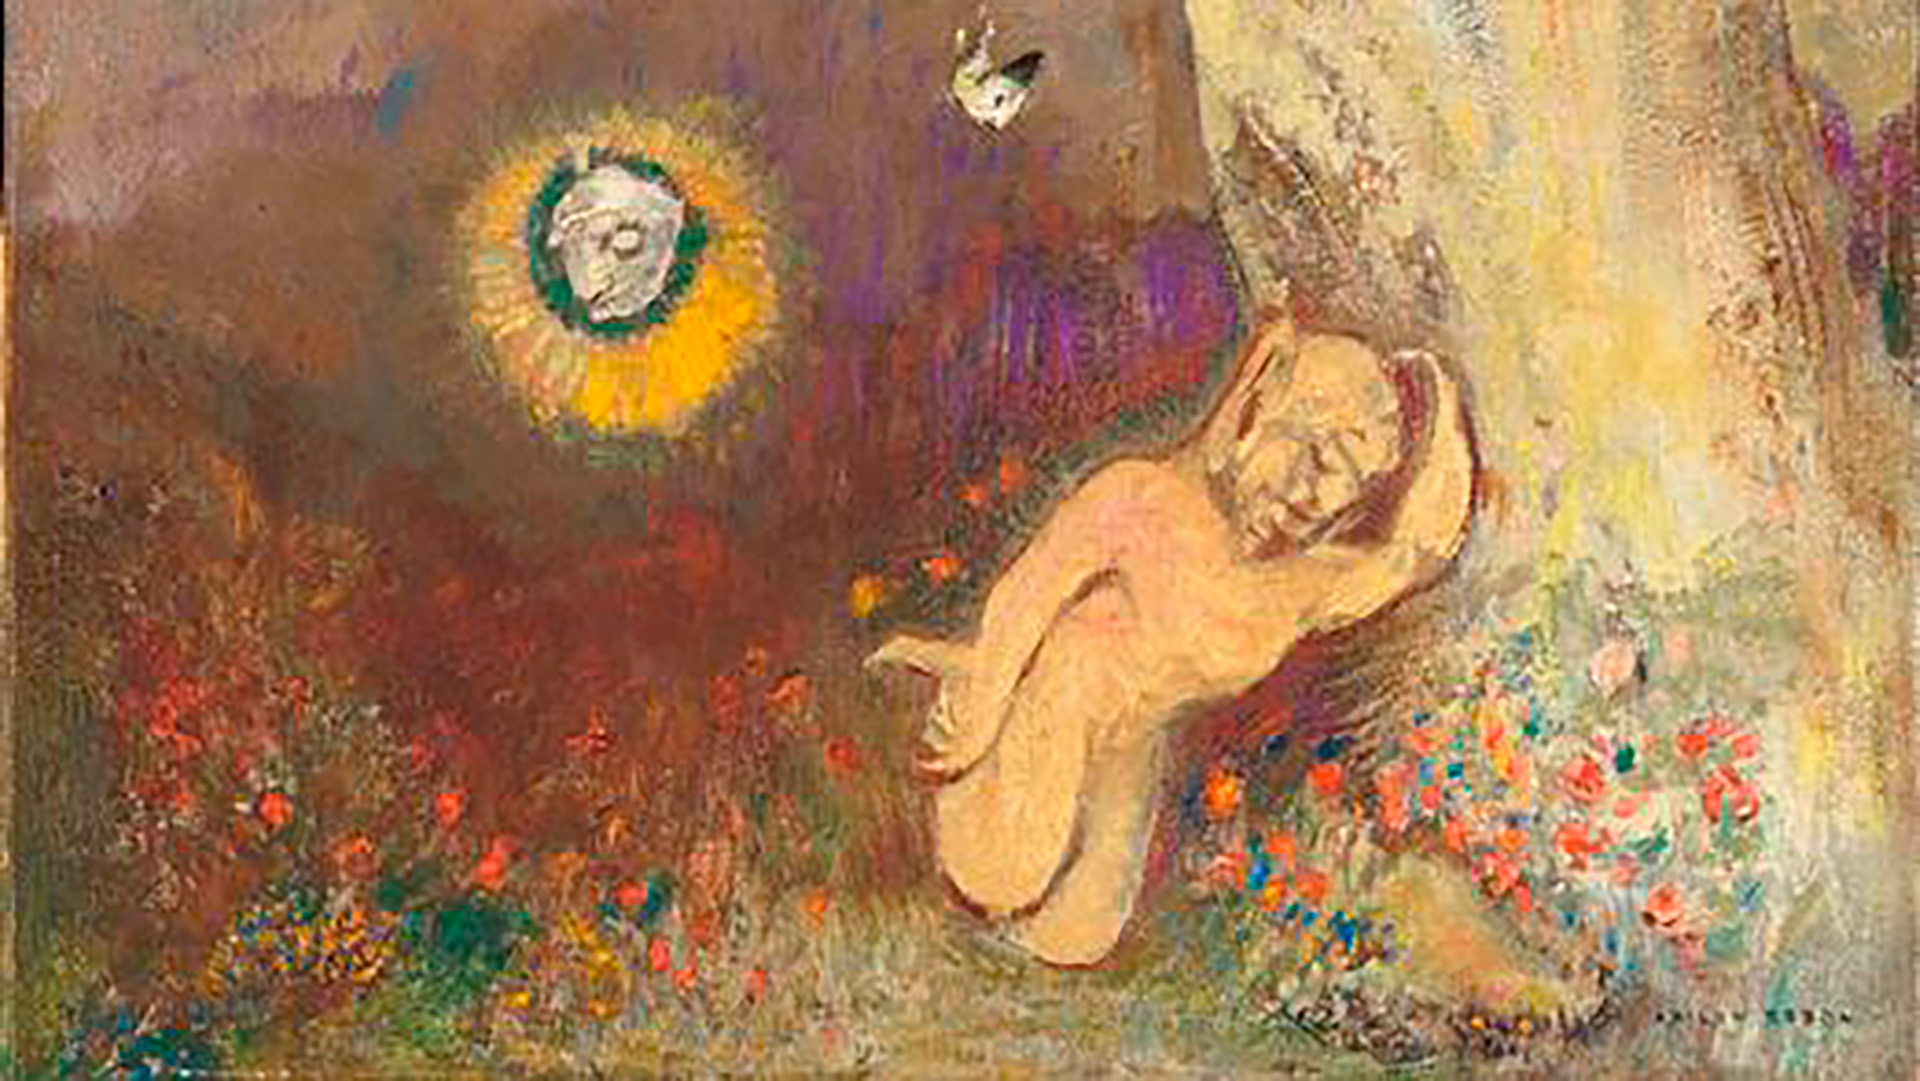 Pieza de Odilon Redon, uno de los artistas de los que se podrán ver sus pasteles en el Museo de Orsay